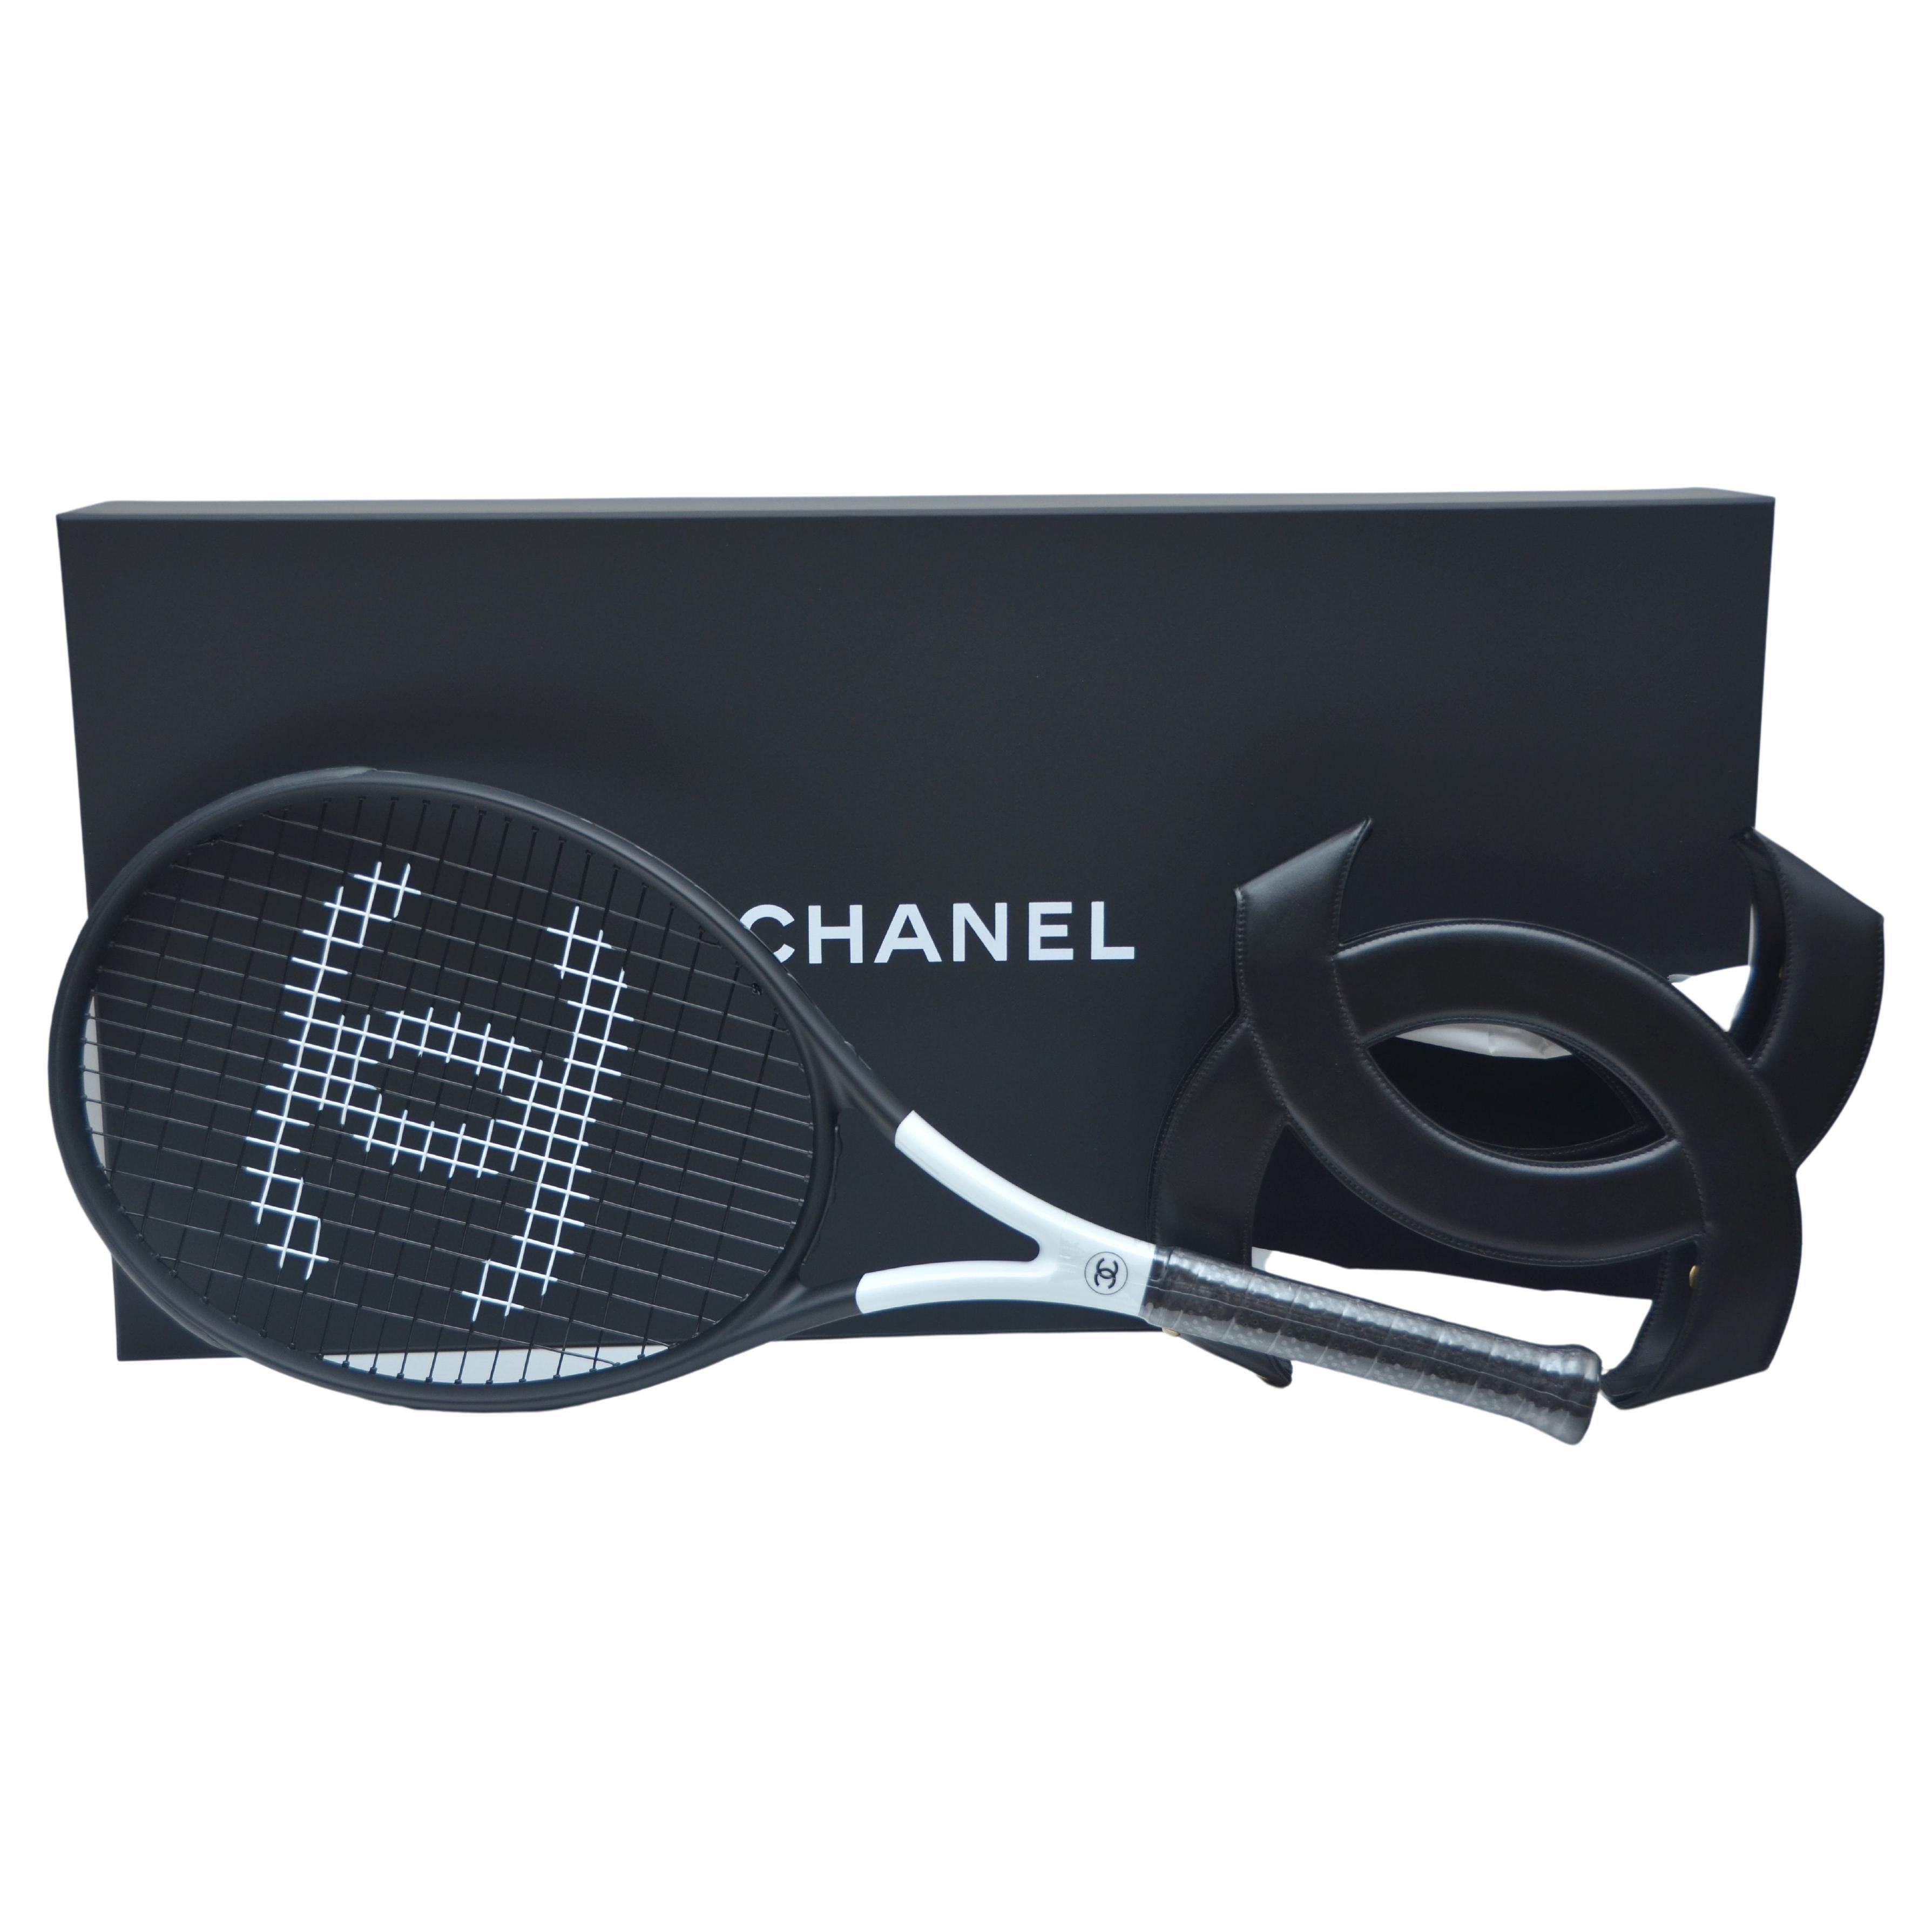 Chanel - Raquette de tennis noire avec chaîne en cuir en forme de X  Couverture CC   NEW